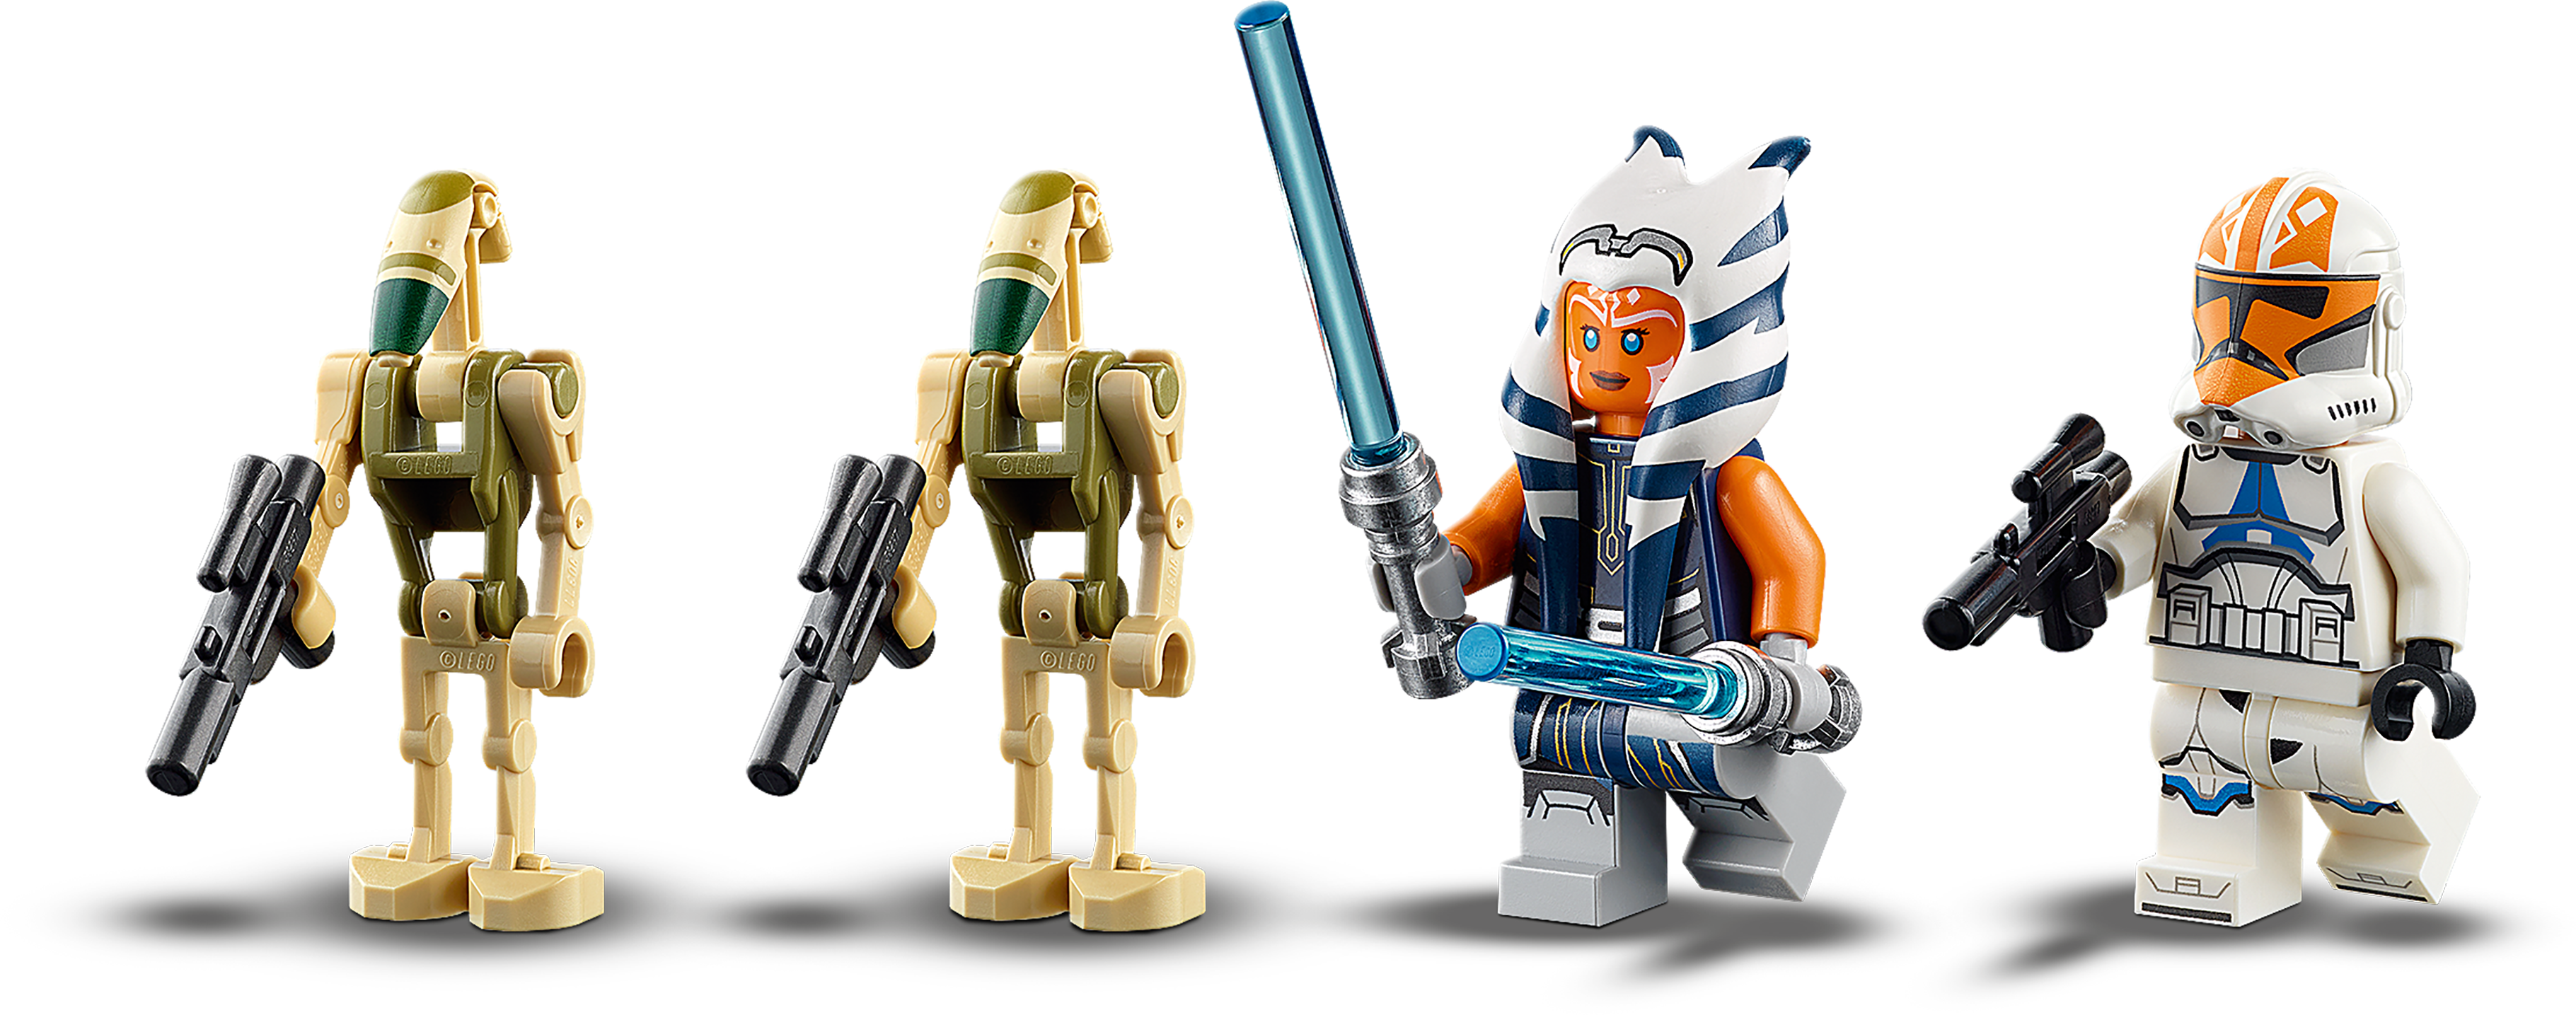 LEGO Star Wars: le Char d'Assaut Blindé (aat) de guerre des clones 75283  kit de construction, jouet de construction génial pour les enfants avec  ahsoka tano plus figurines de droïde de combat (